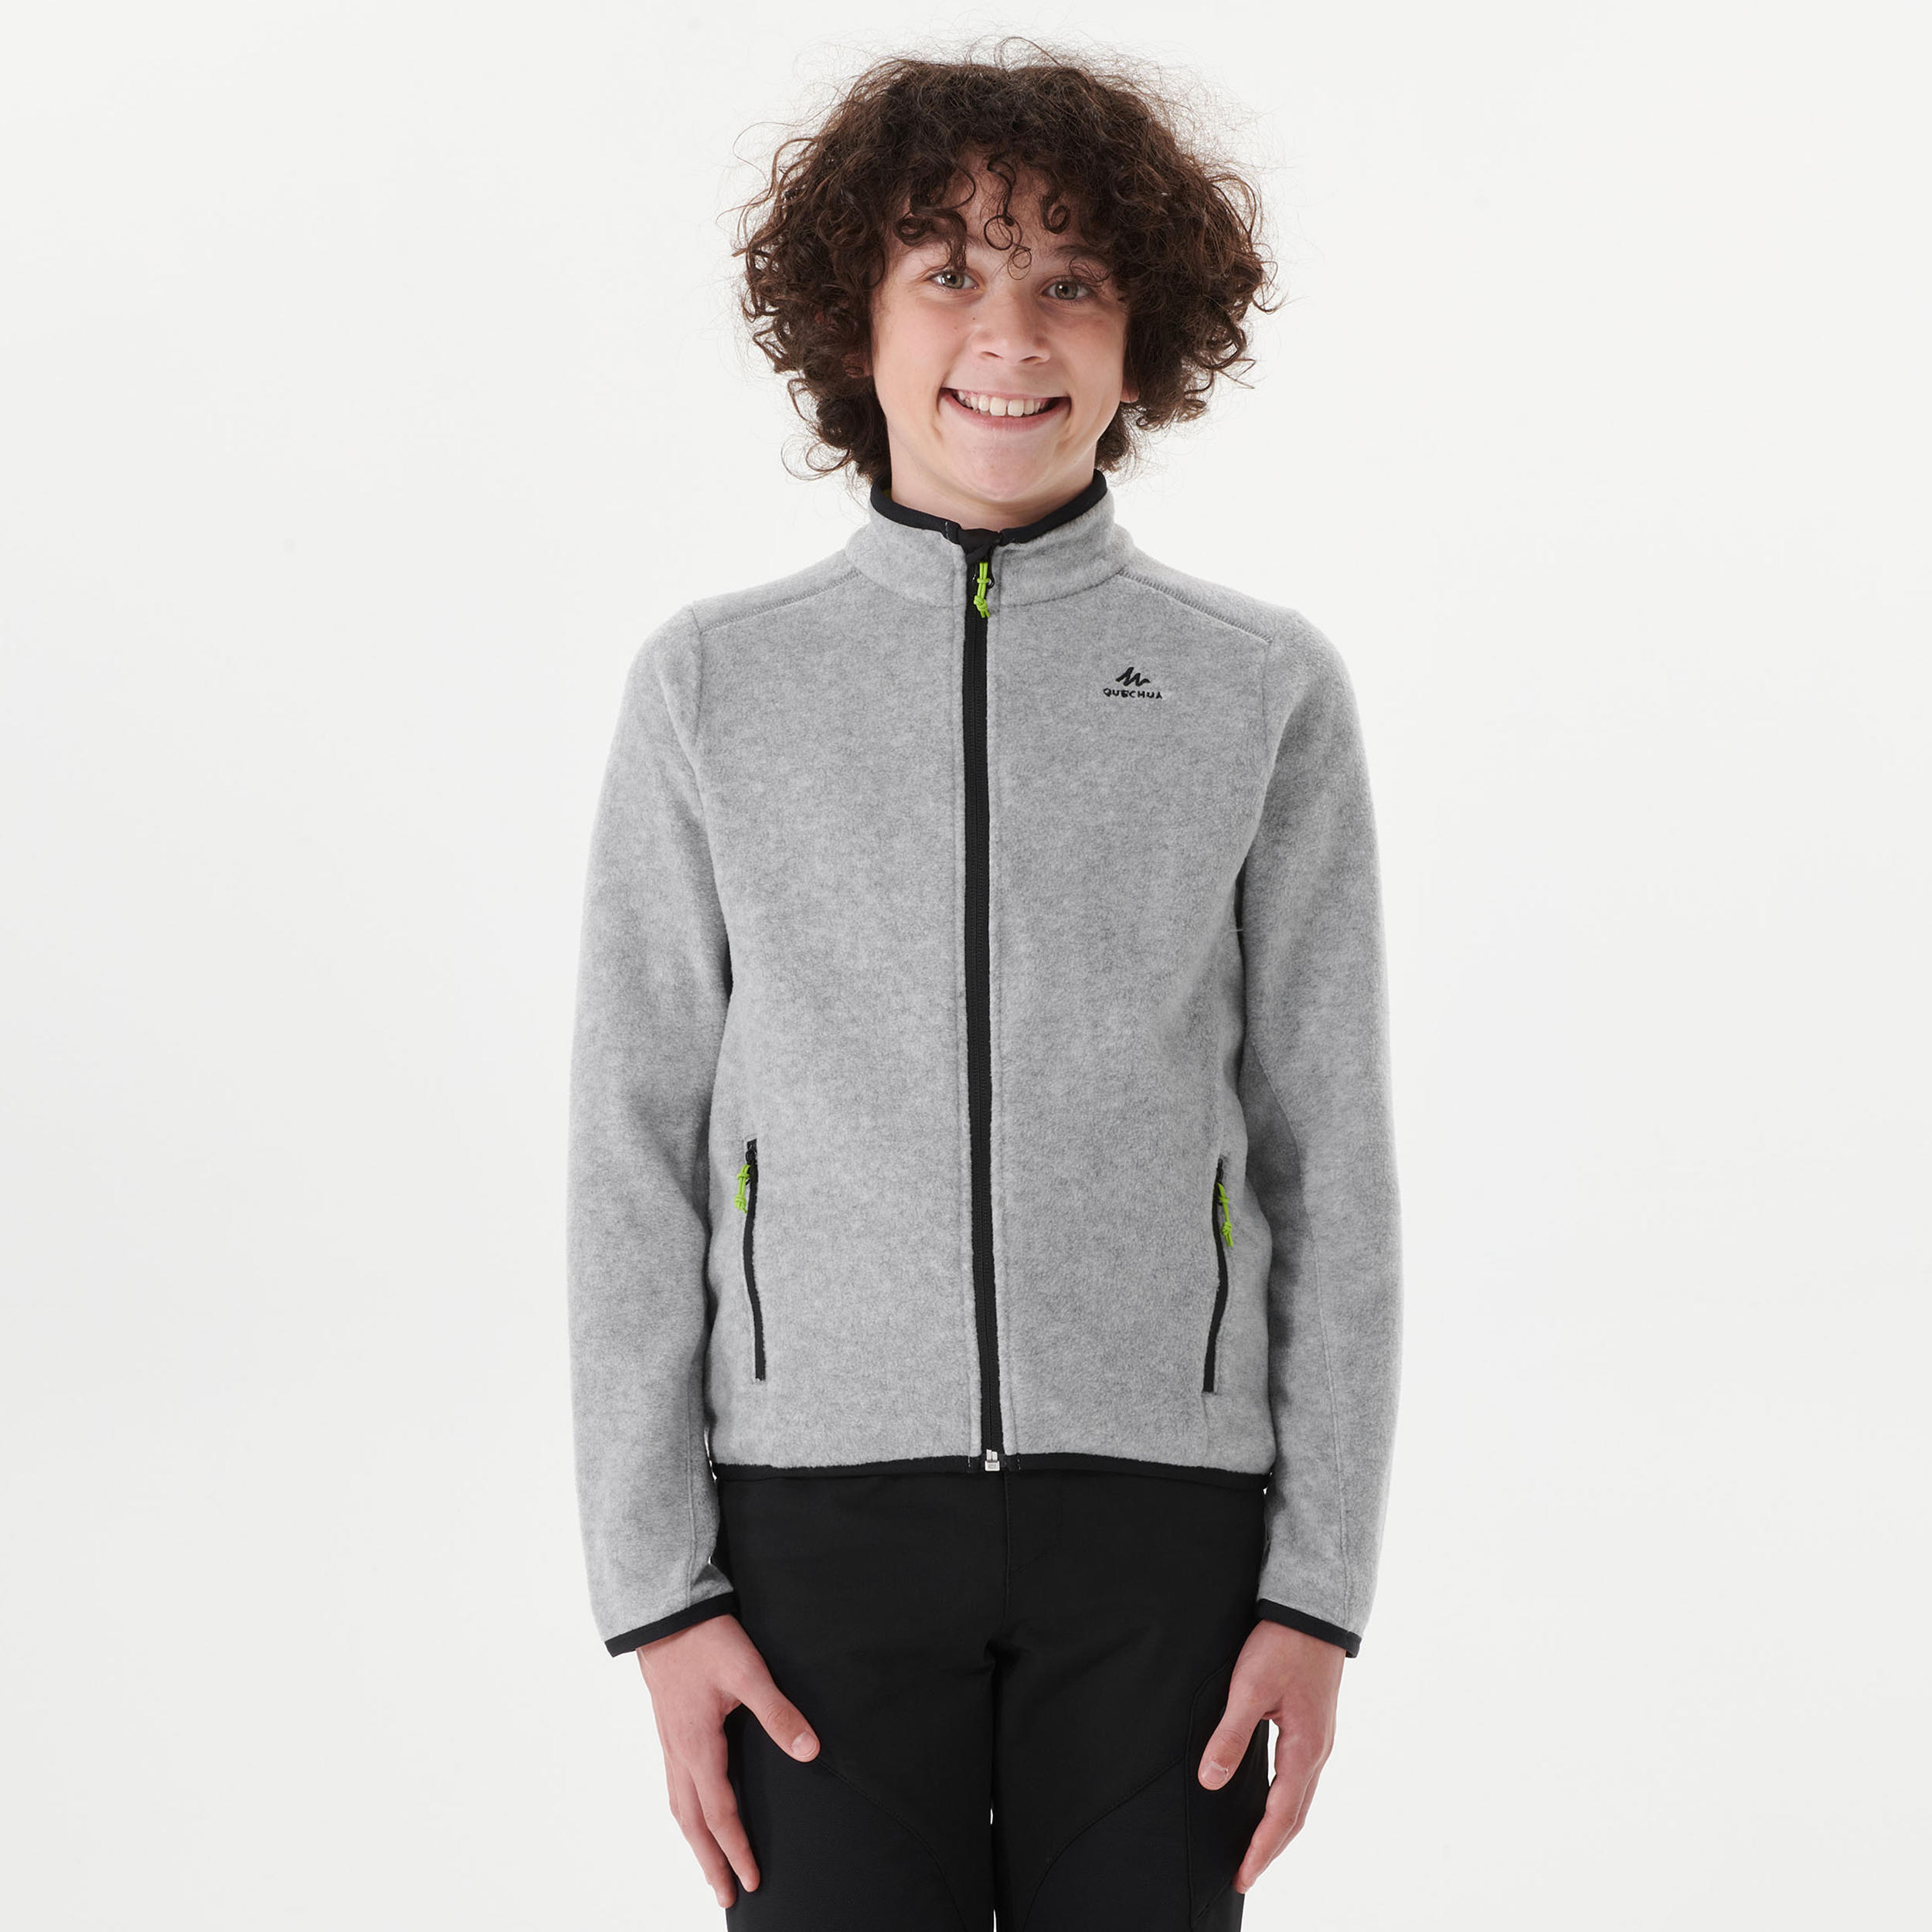 Kids' Hiking Fleece Jacket MH150 7-15 Years - Grey 6/7